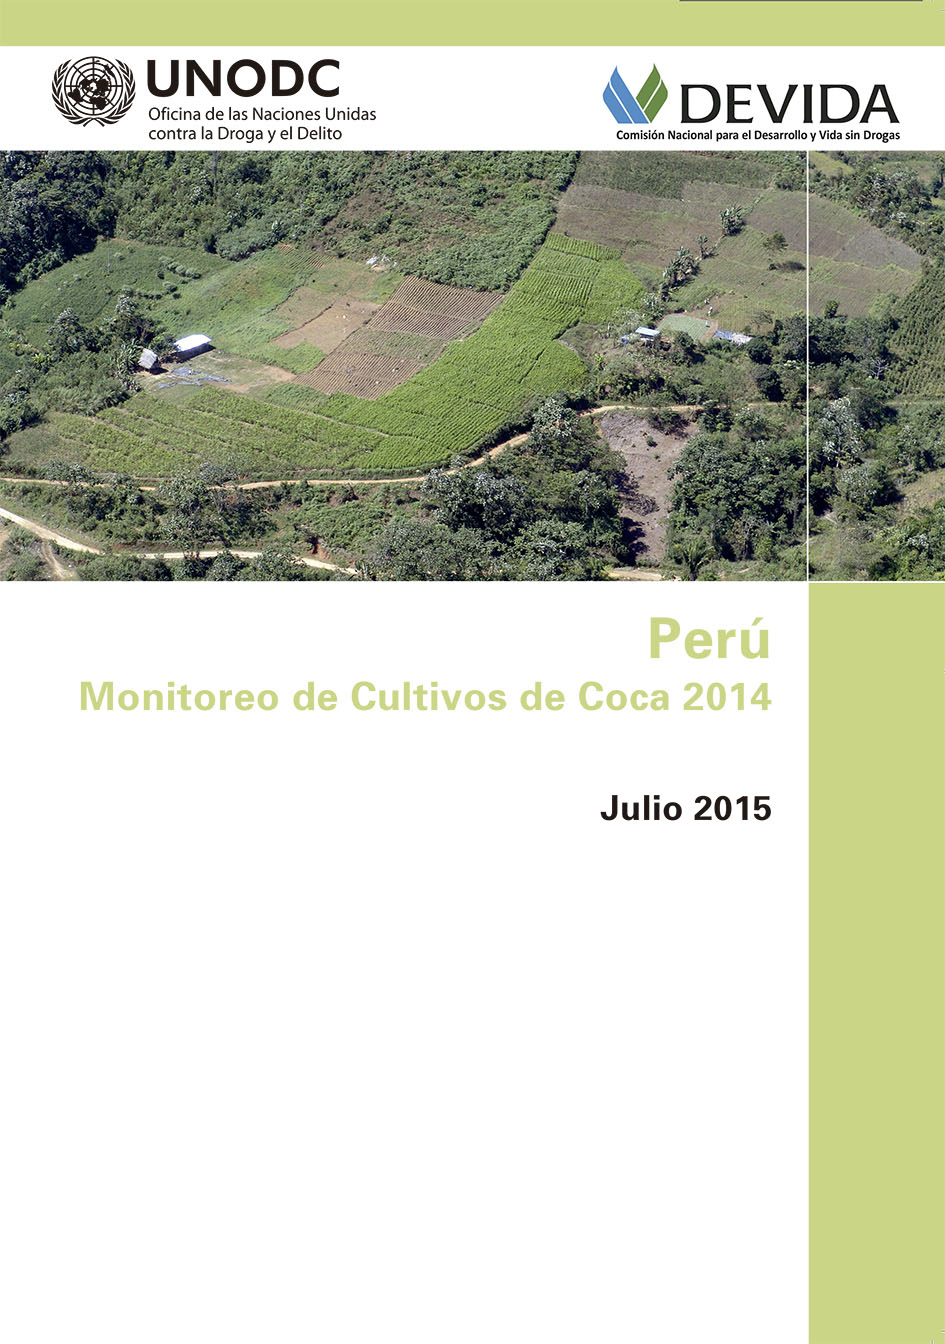 Monitoreo de Cultivos de Coca 2014